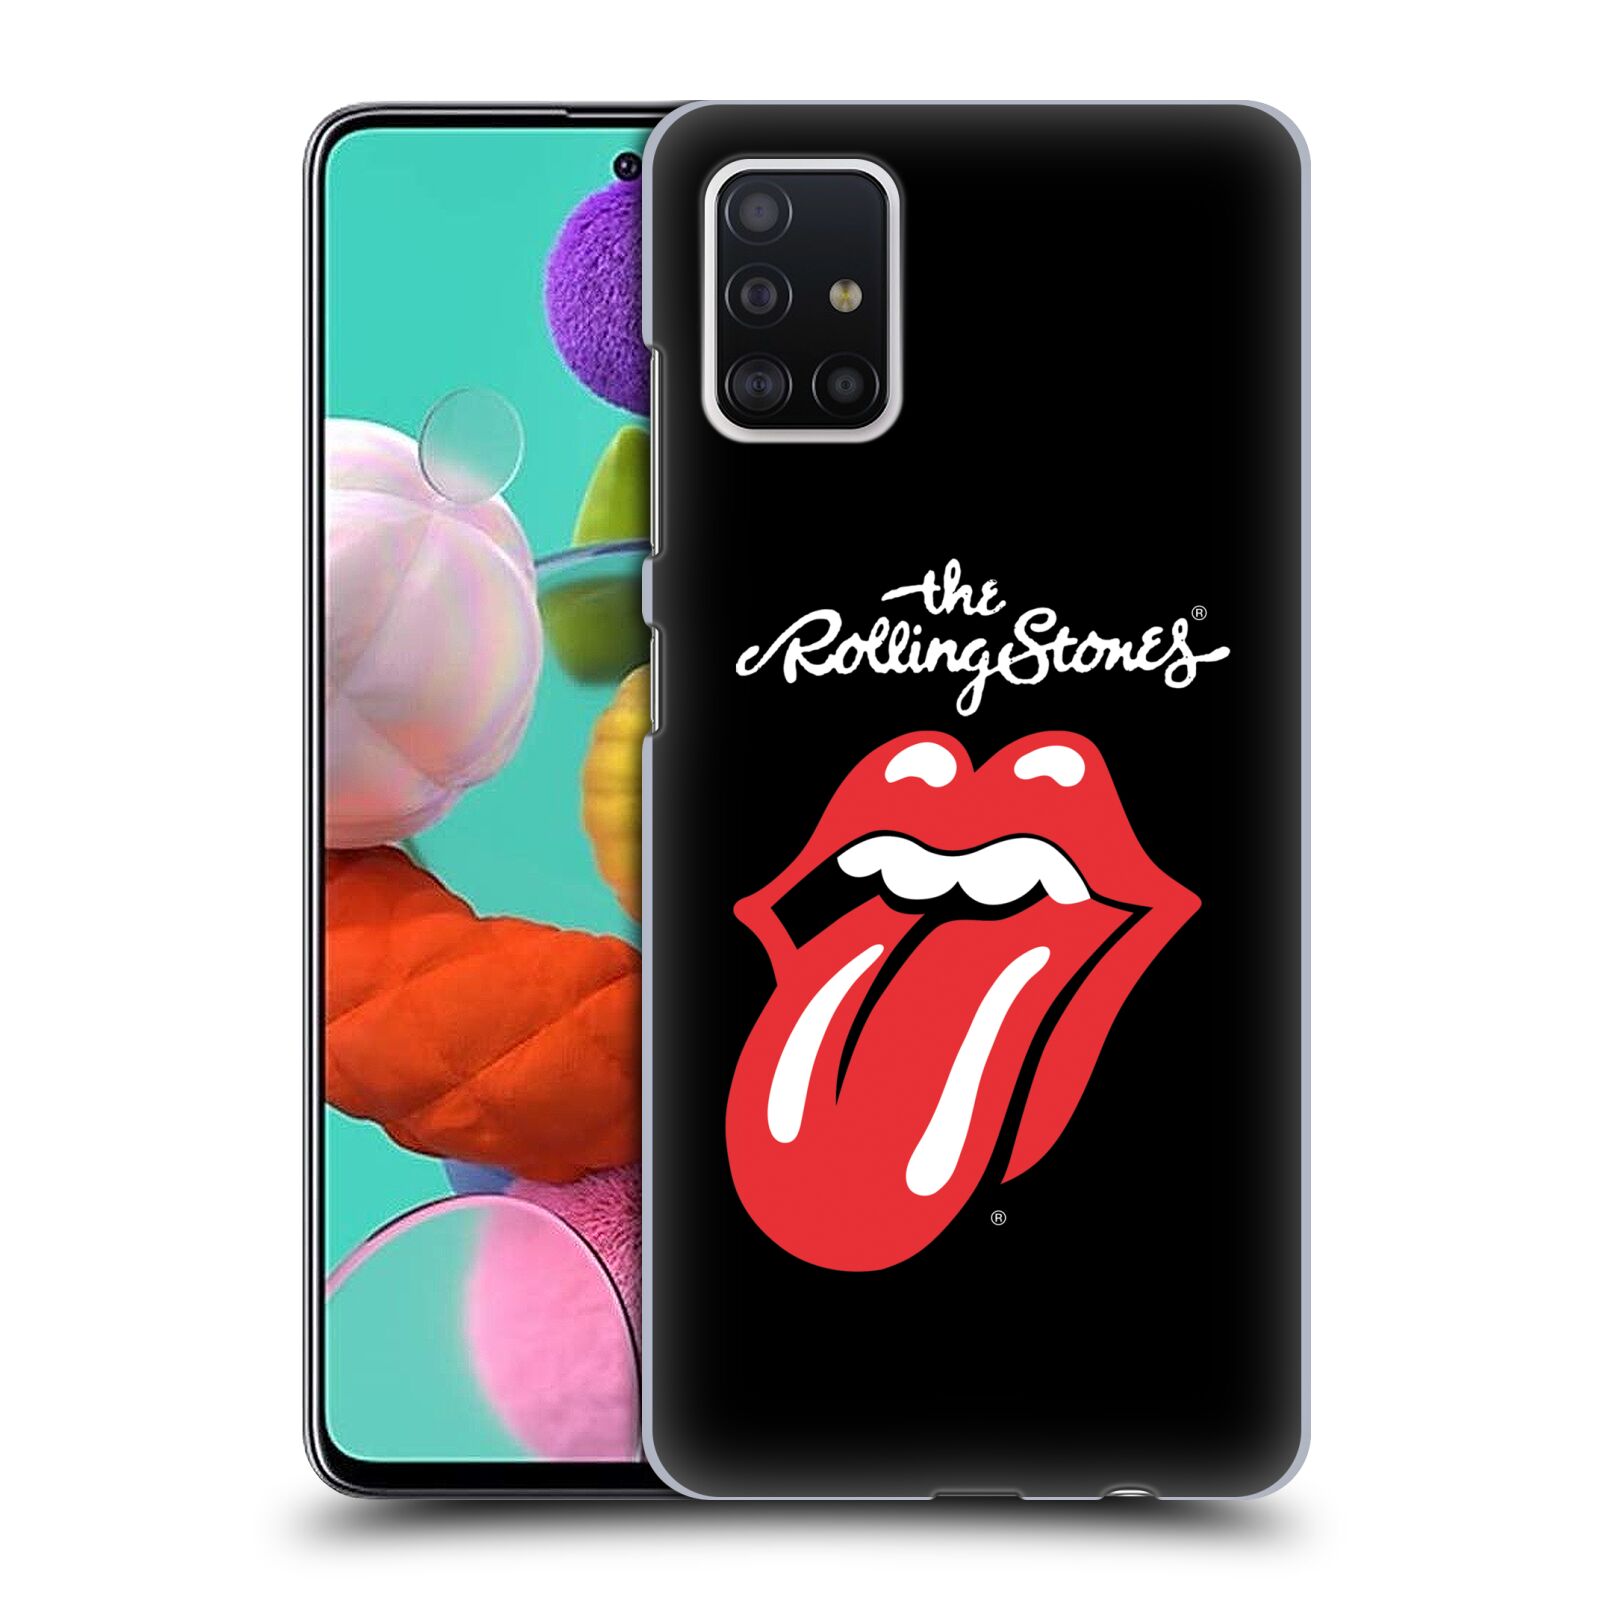 Pouzdro na mobil Samsung Galaxy A51 - HEAD CASE - rocková skupina Rolling Stones znak černá a červená